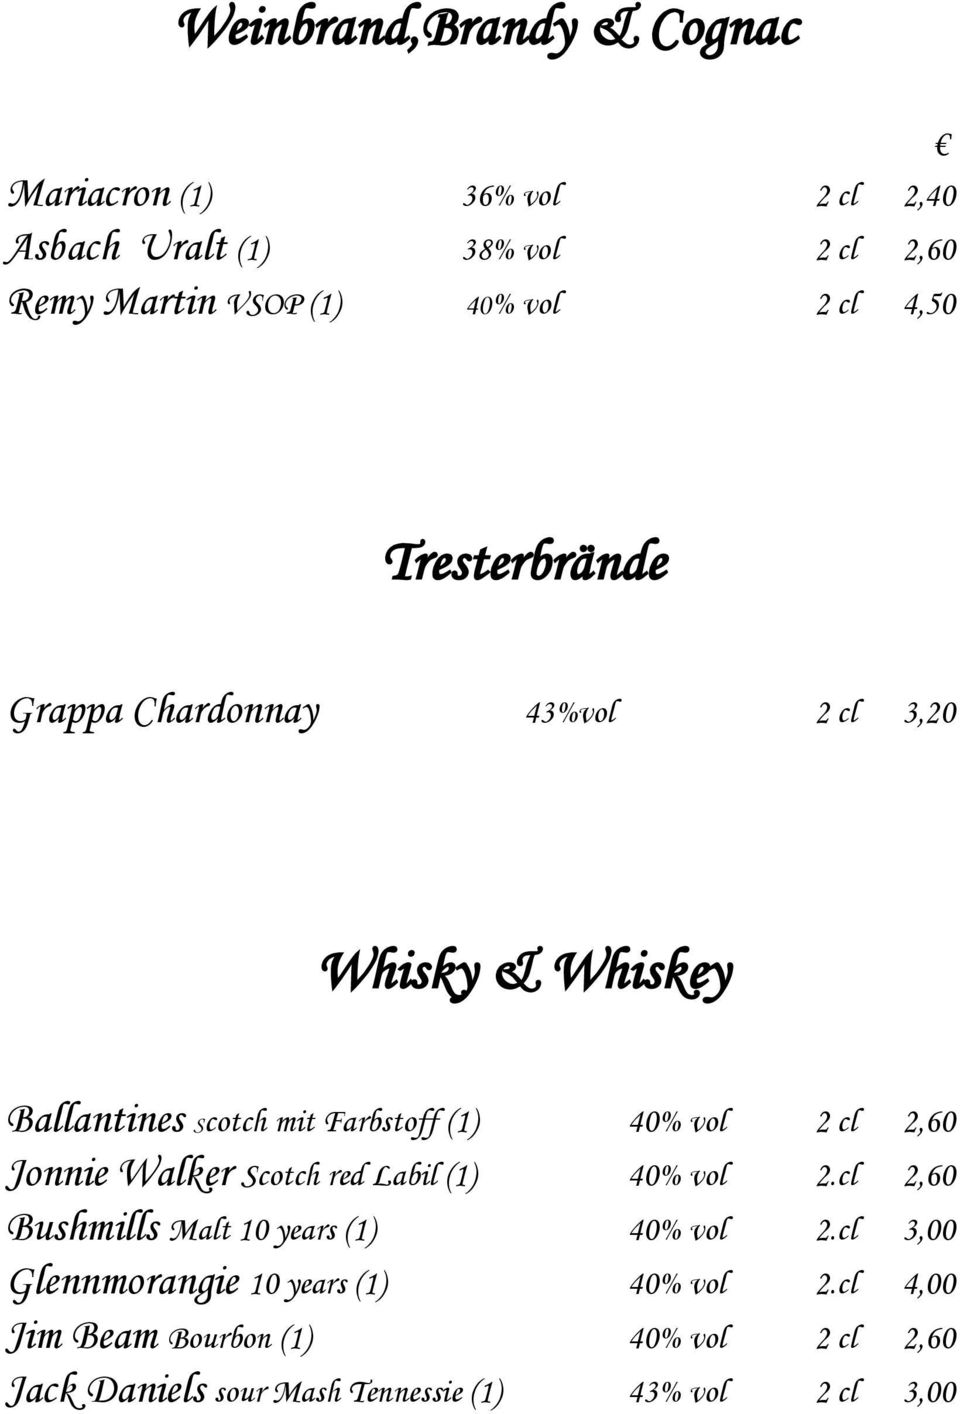 cl 2,60 Jonnie Walker Scotch red Labil (1) 40% vol 2.cl 2,60 Bushmills Malt 10 years (1) 40% vol 2.